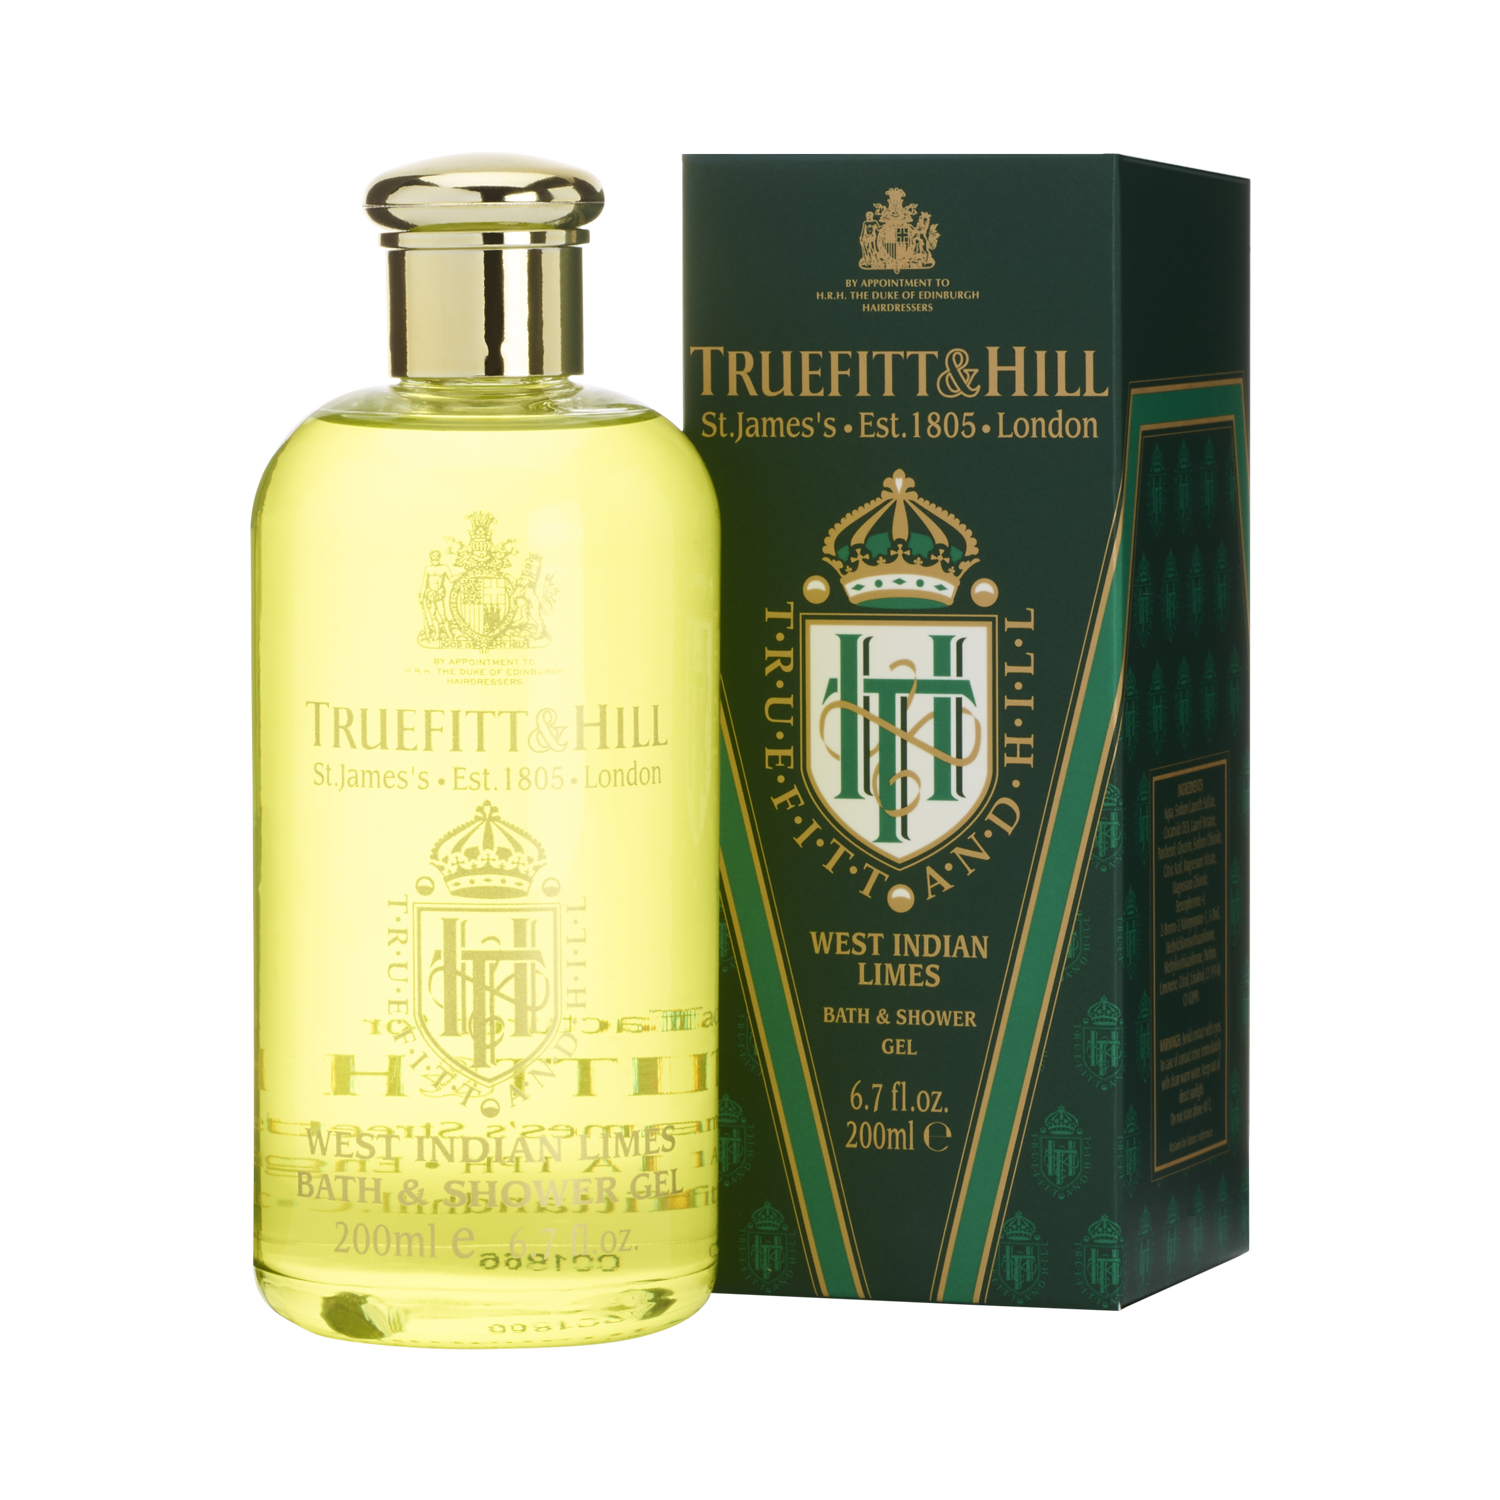 Truefitt & Hill - West Indian Limes - Bath & Shower Gel